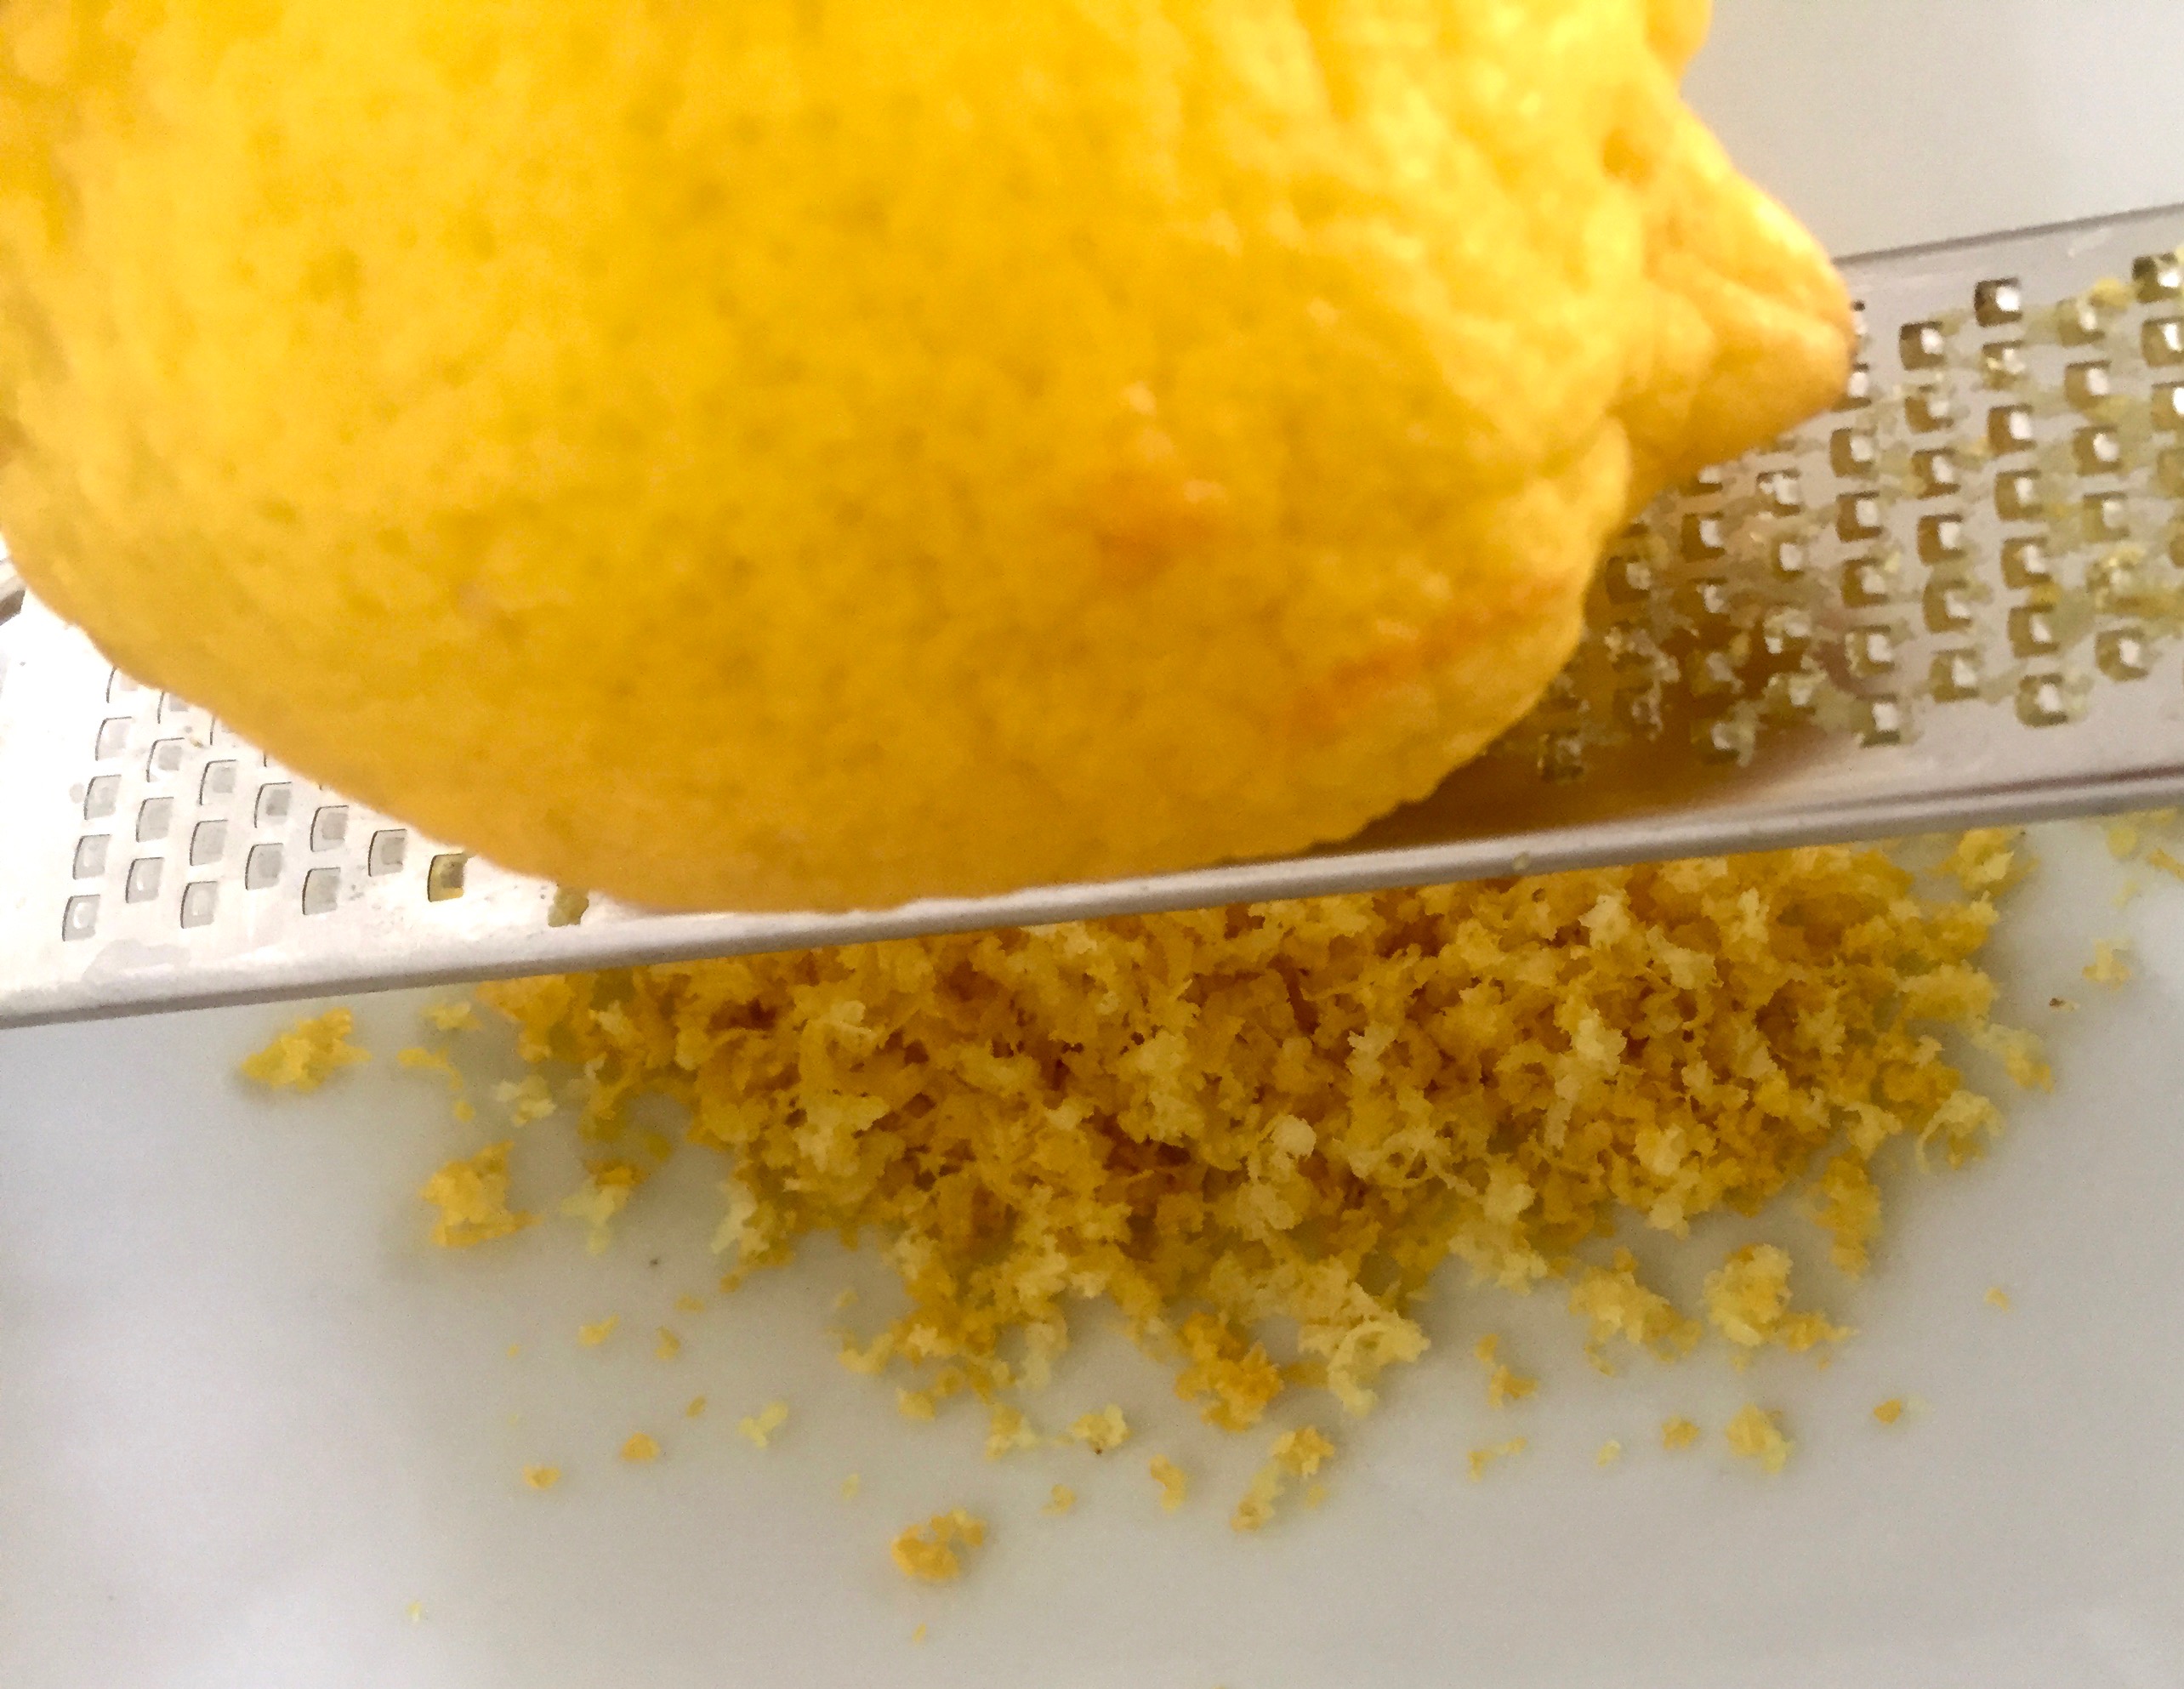 Die Schale einer Zitronen wird abgerieben. Dazu liegt eine Zitrone auf einer Reibe und darunter wird die Schale aufgefangen.